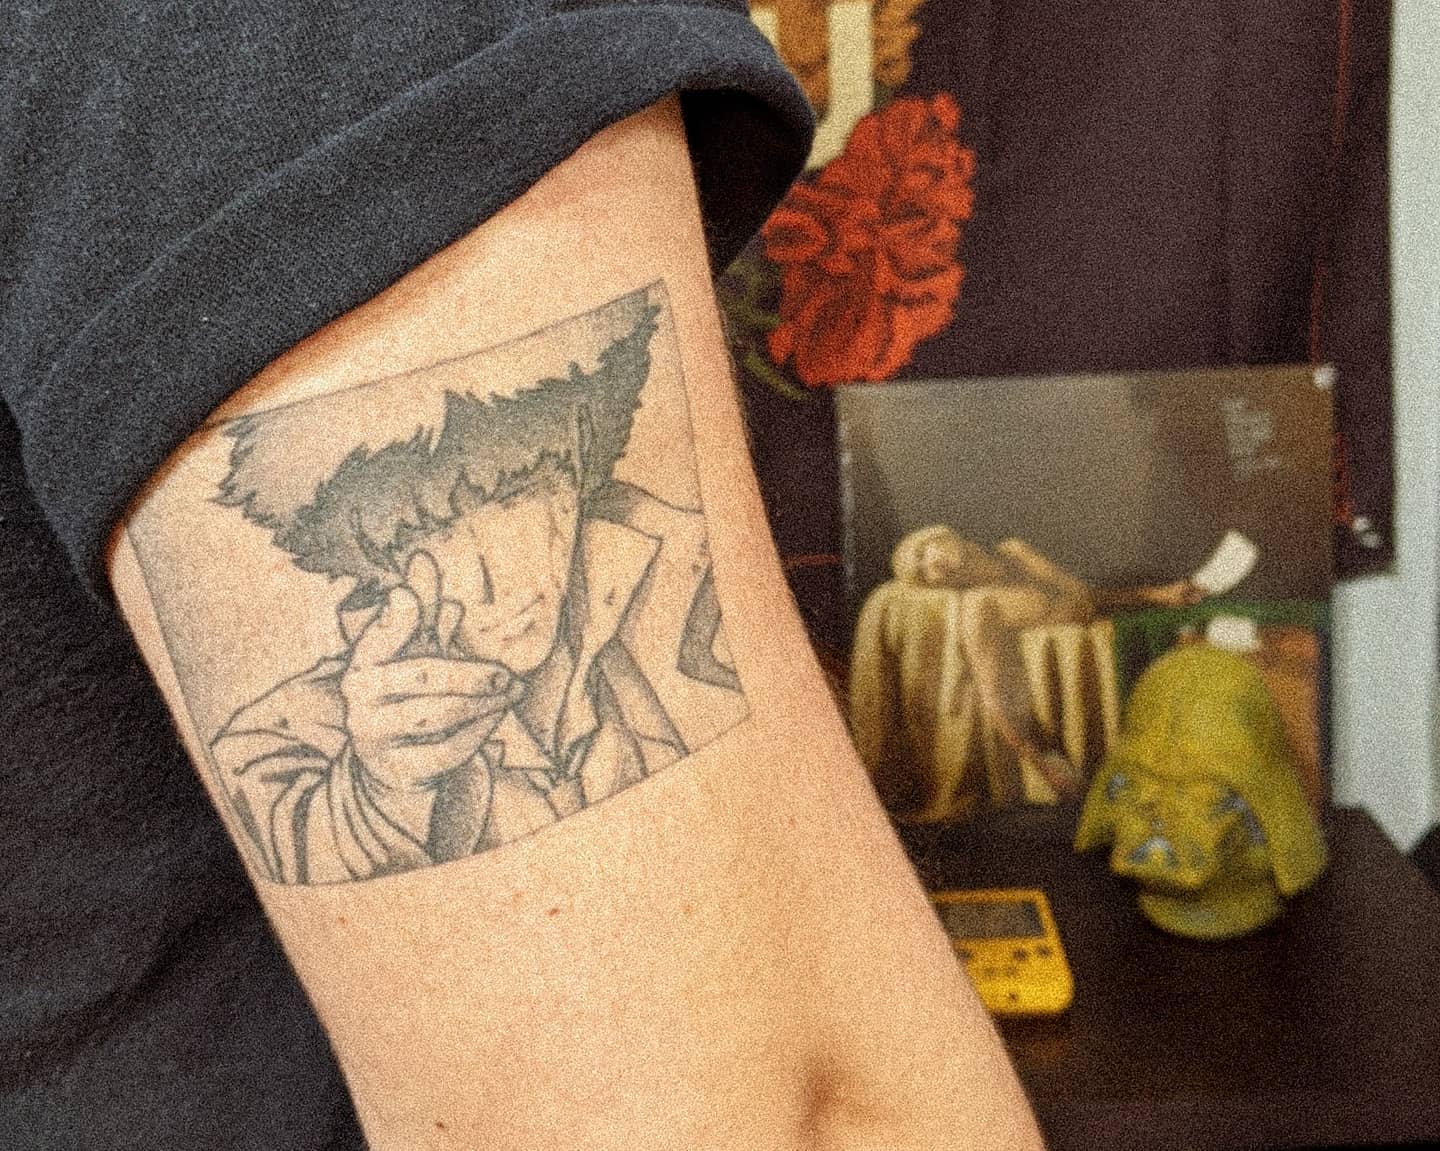 Cowboy Bebop tattoo by zoebabowie on DeviantArt